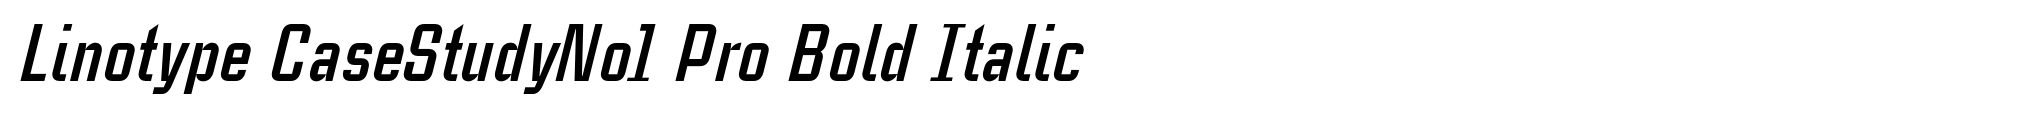 Linotype CaseStudyNo1 Pro Bold Italic image